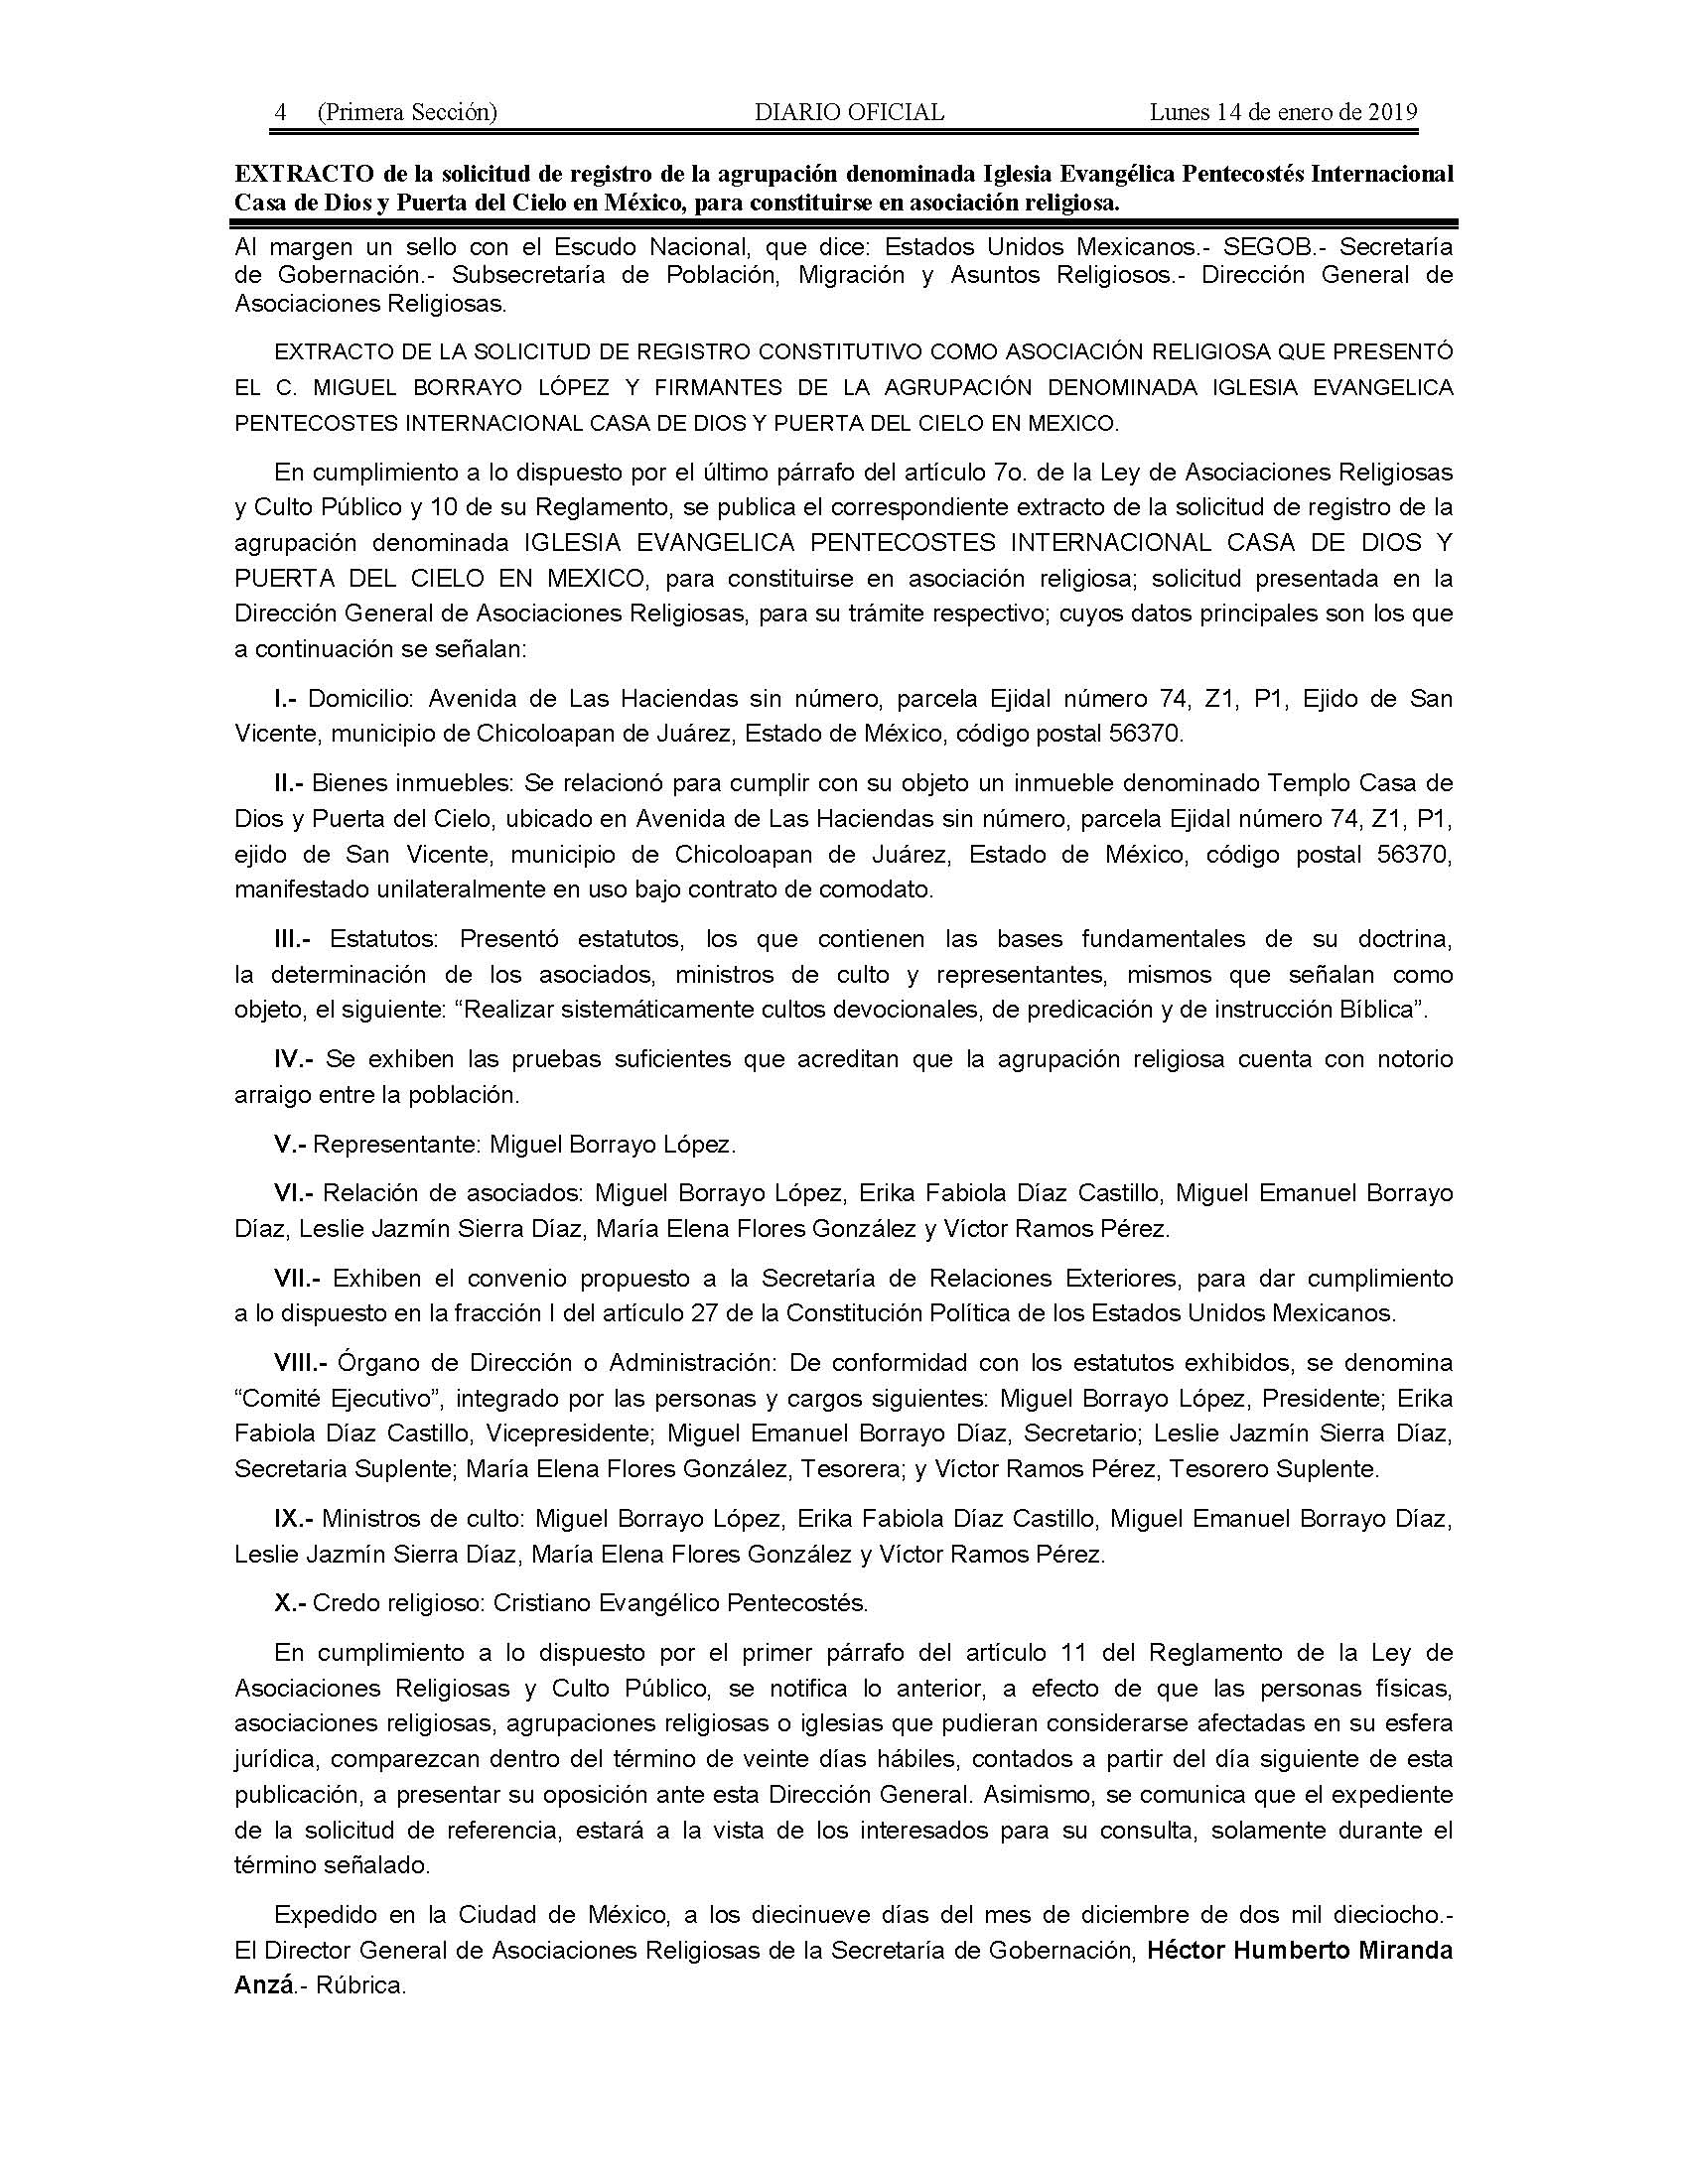 Diario Oficial de la Federación || Bienvenido al Sistema de Información del  Diario Oficial de la Federación